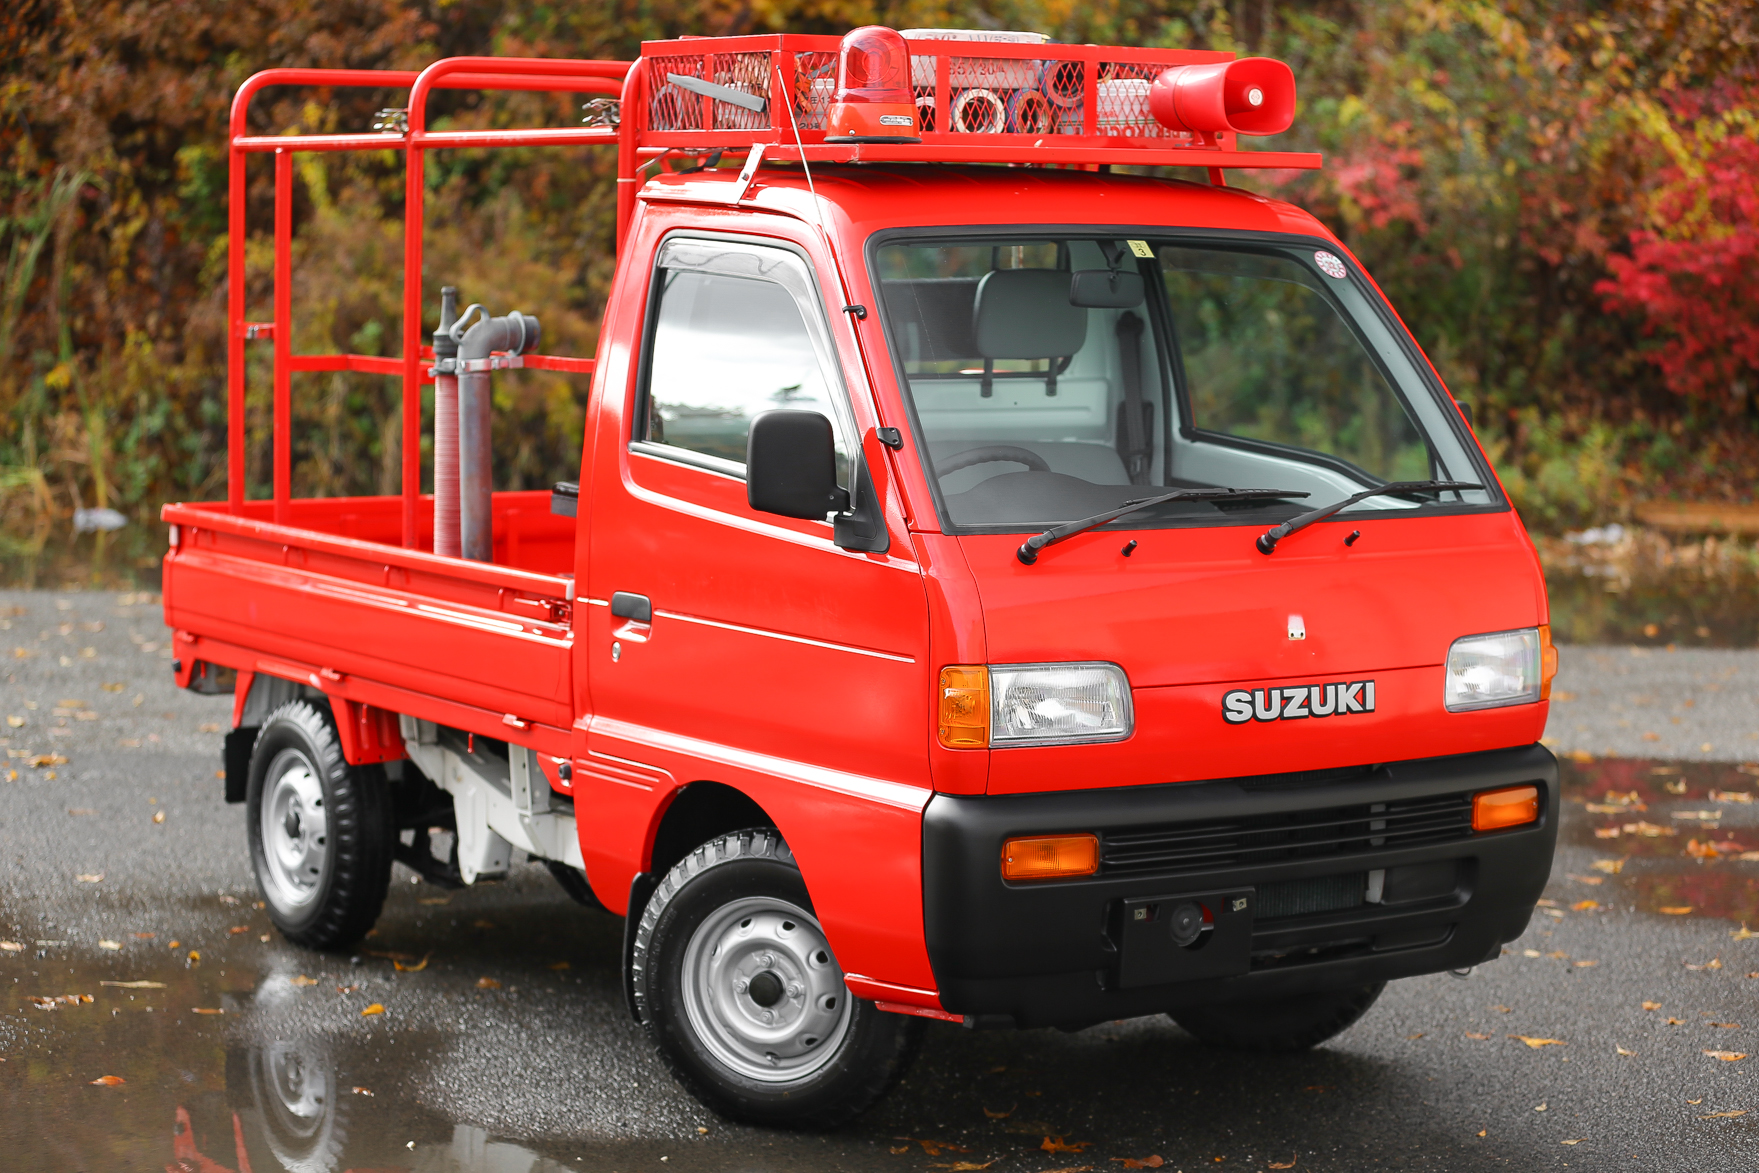 1996 Suzuki Carry Fire Truck - $17,500